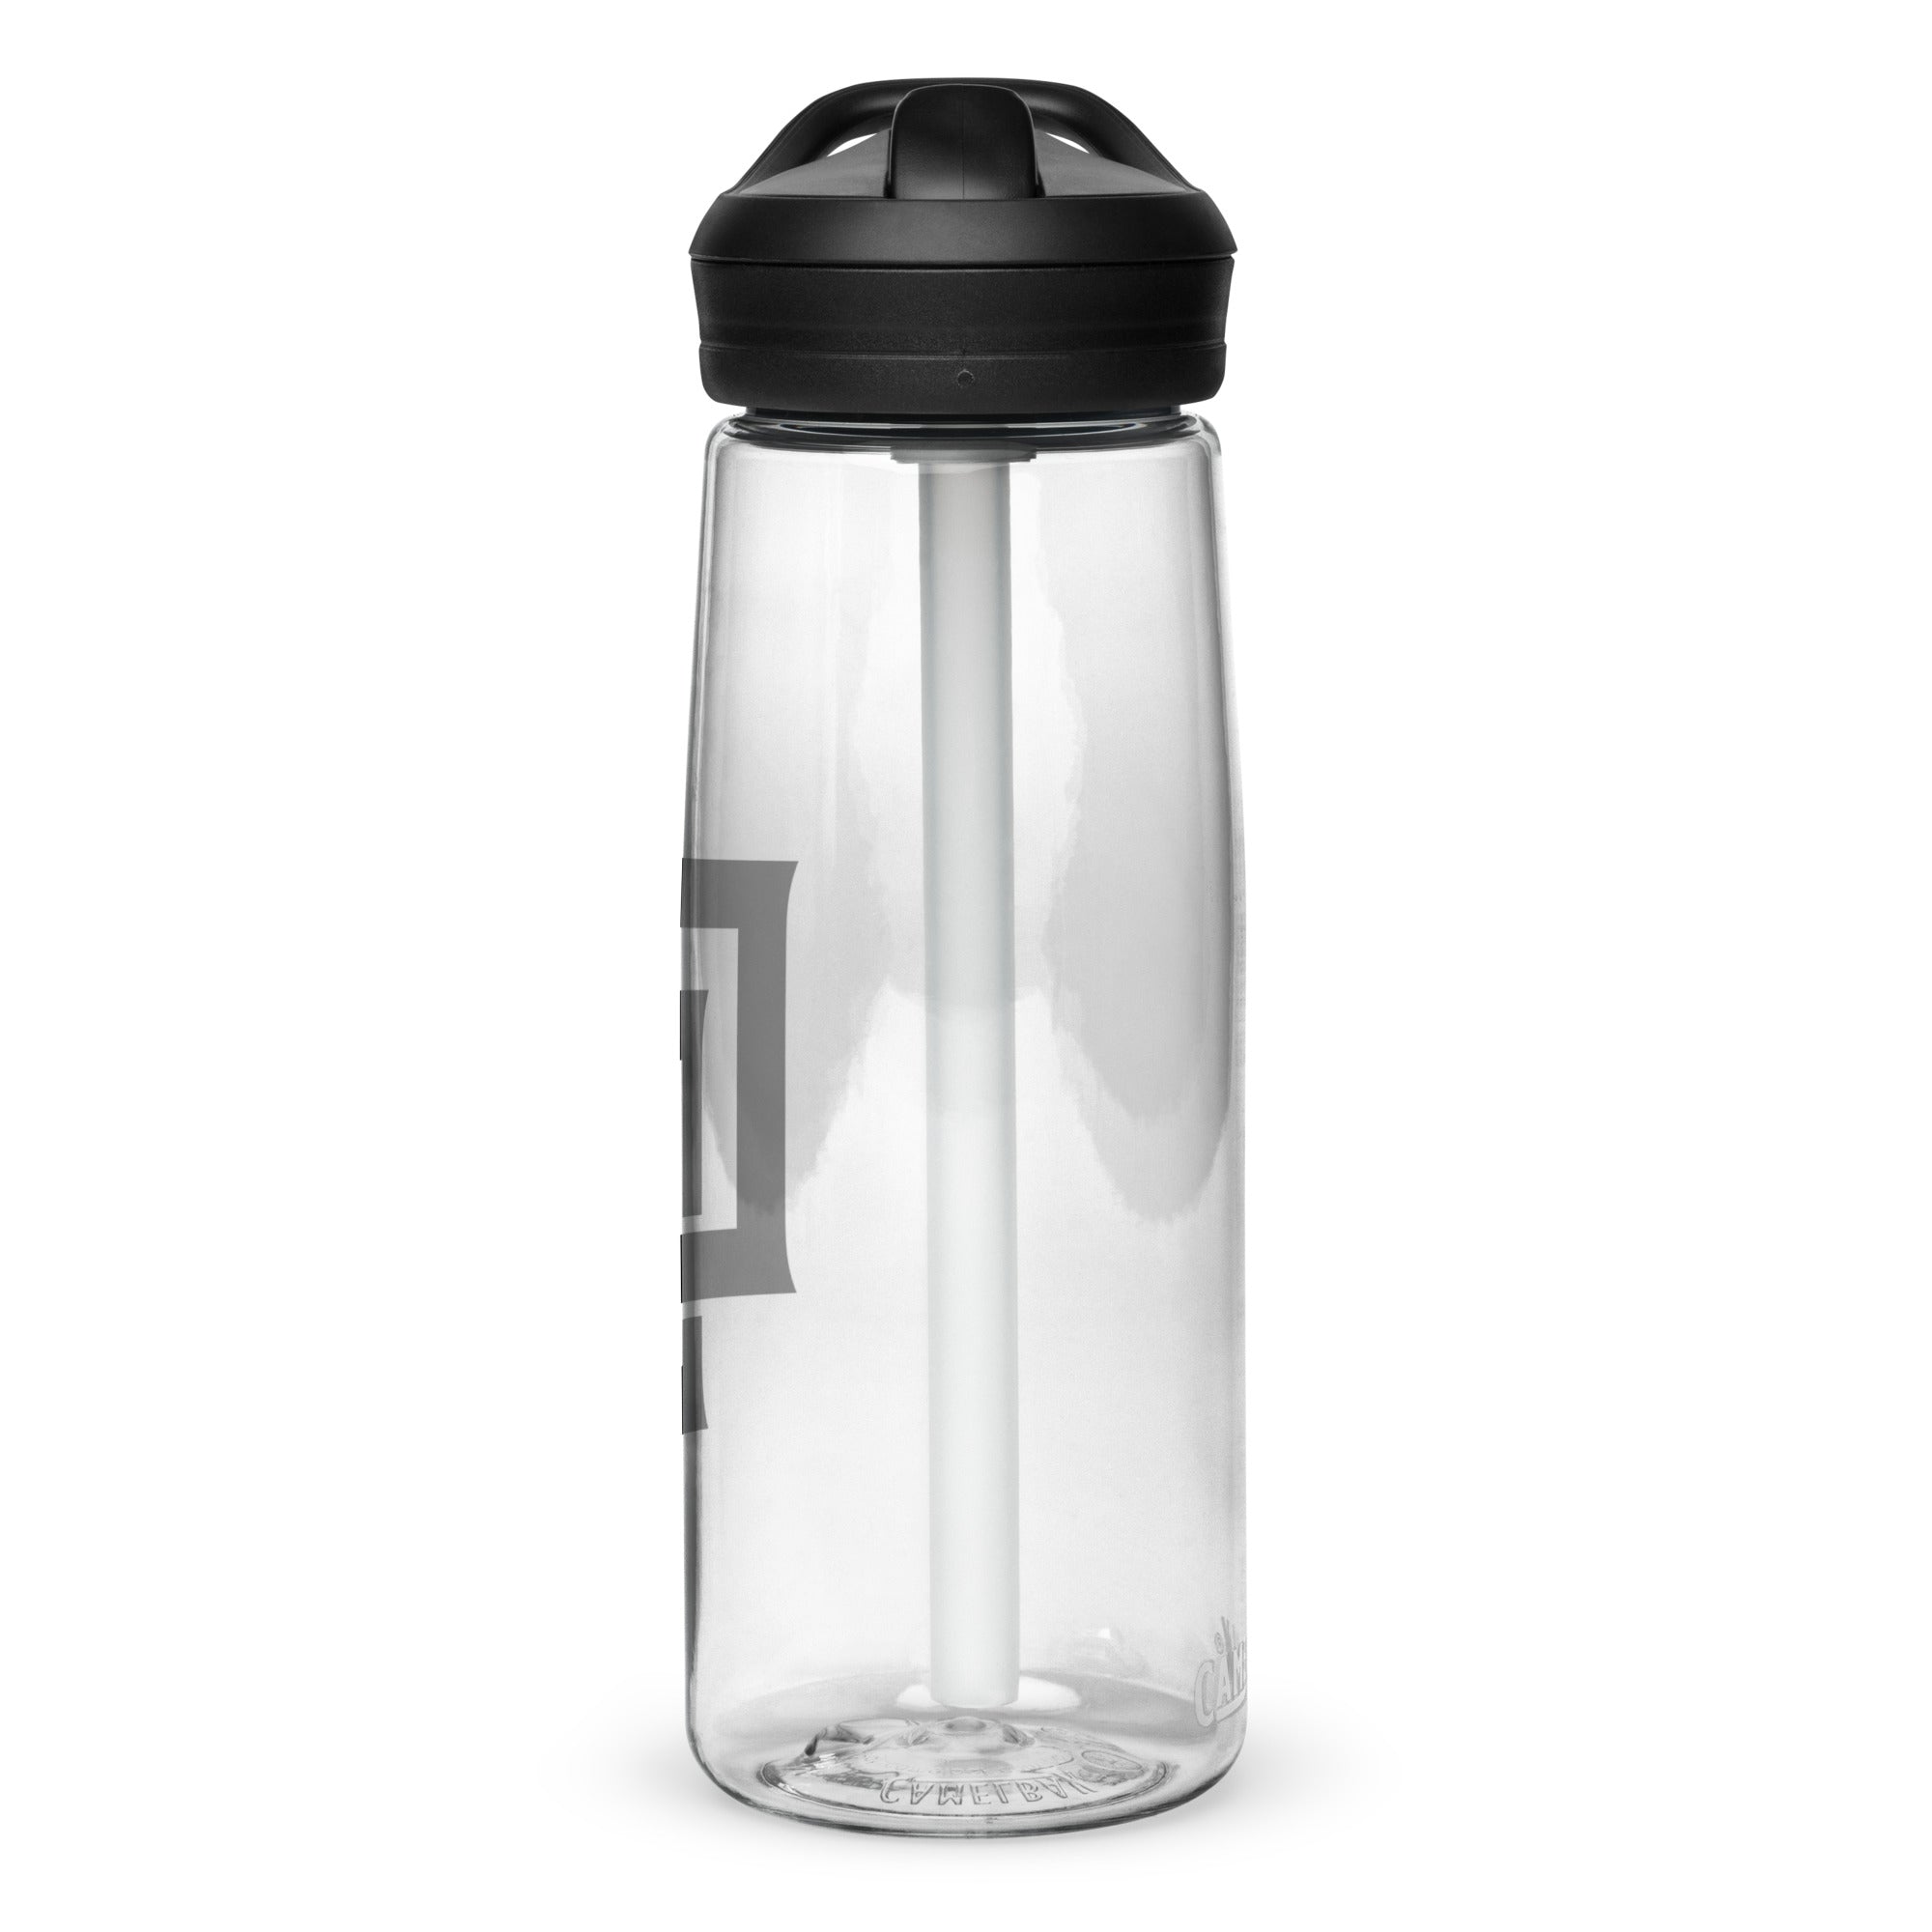 Diesel Sports water bottle